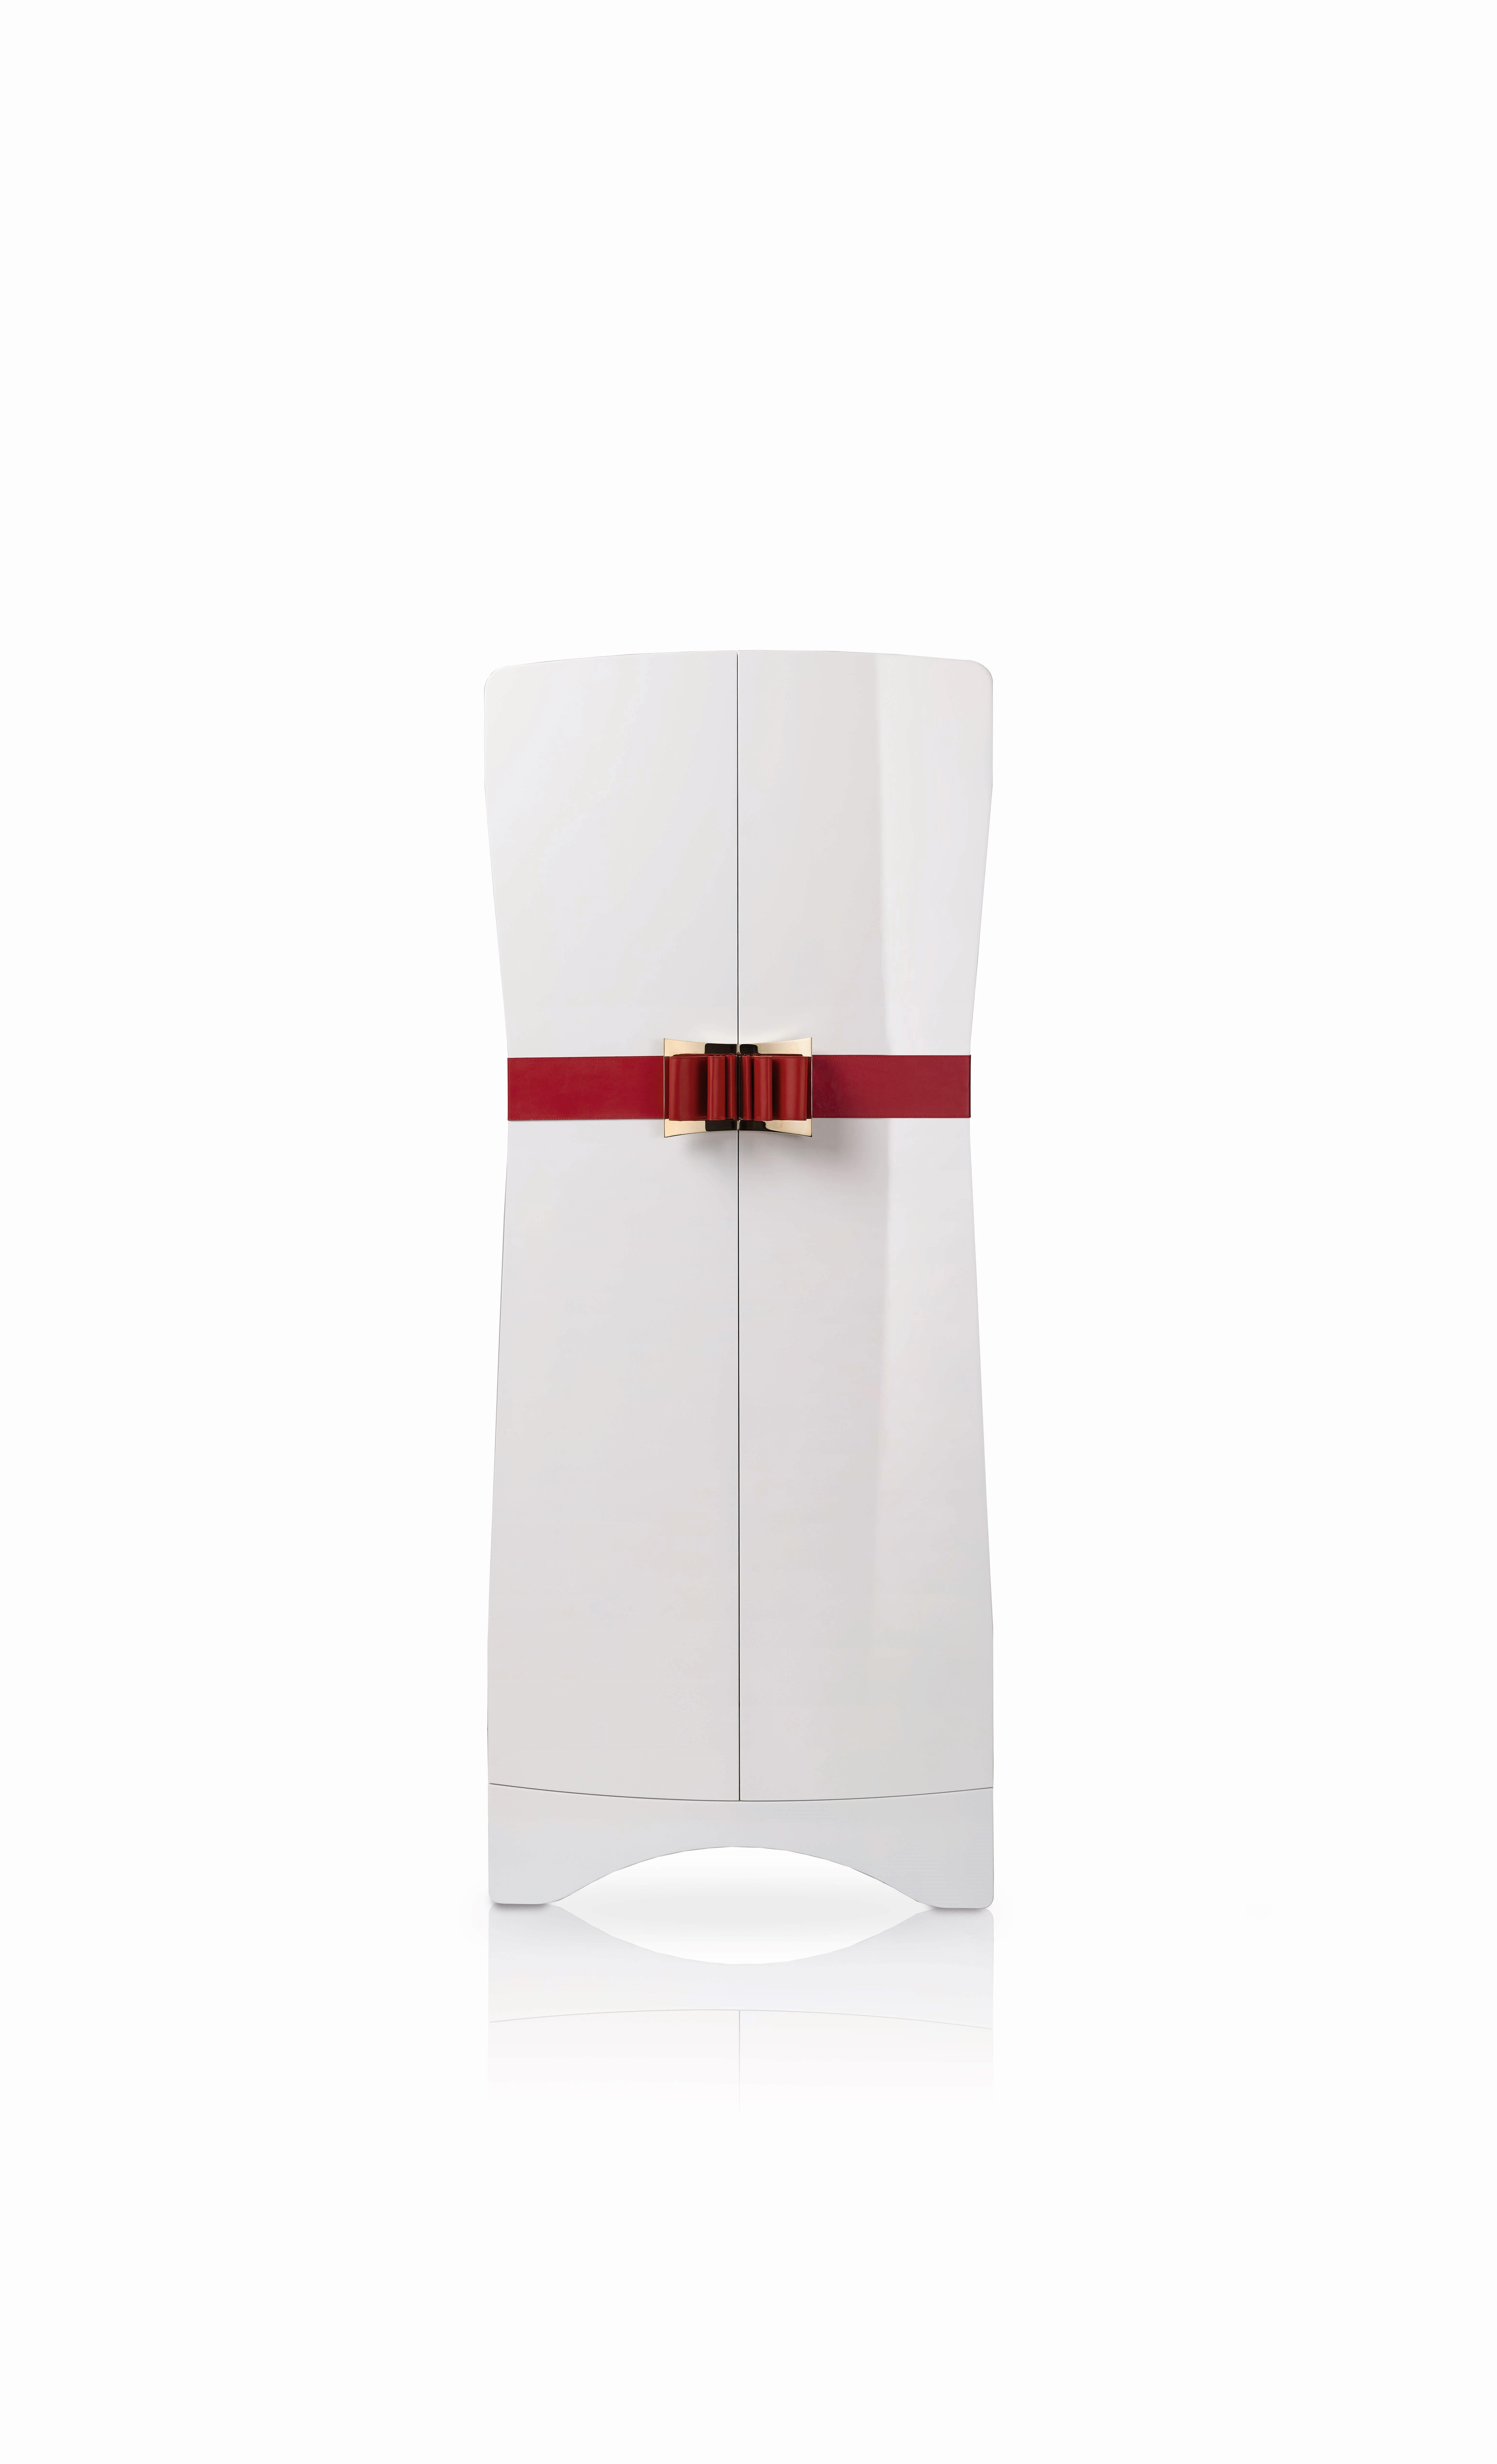 Agresti Contemporary Fiocco Armoire Safe in Shiny White Maple